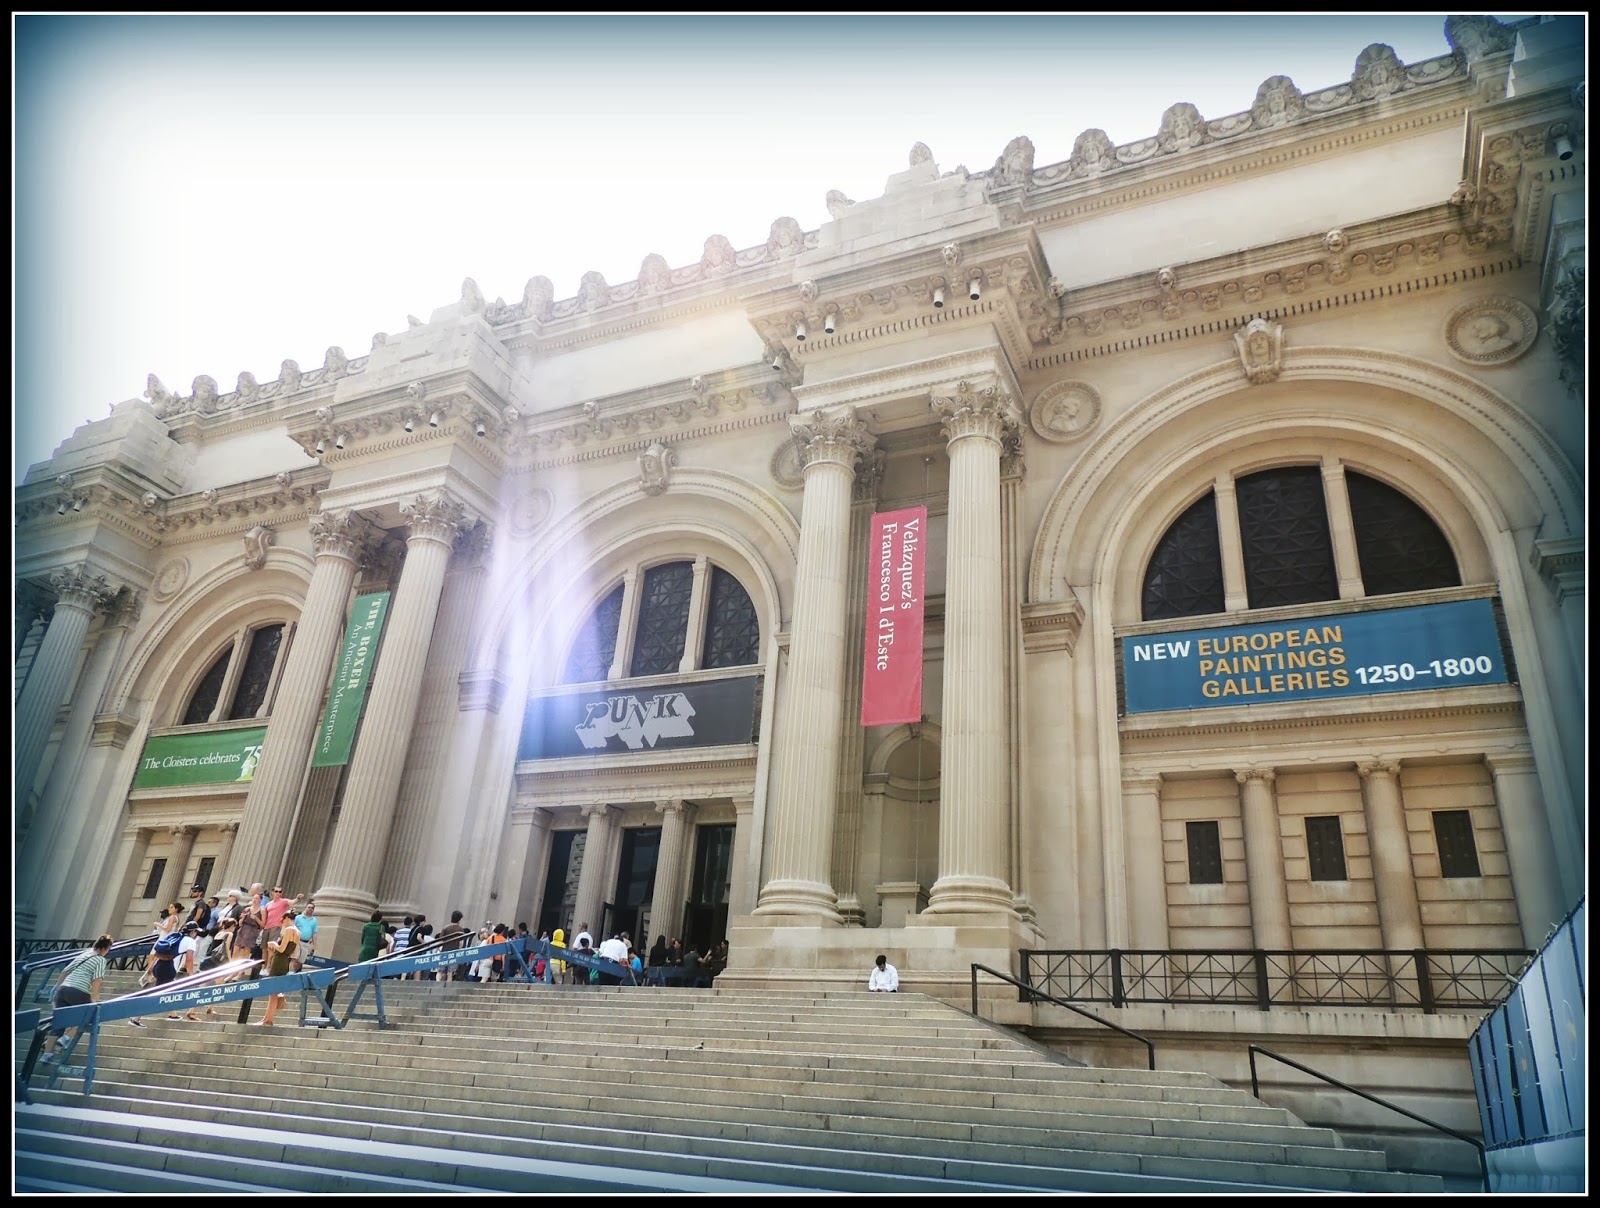 NY en 3 Días: The Metropolitan Museum of Art